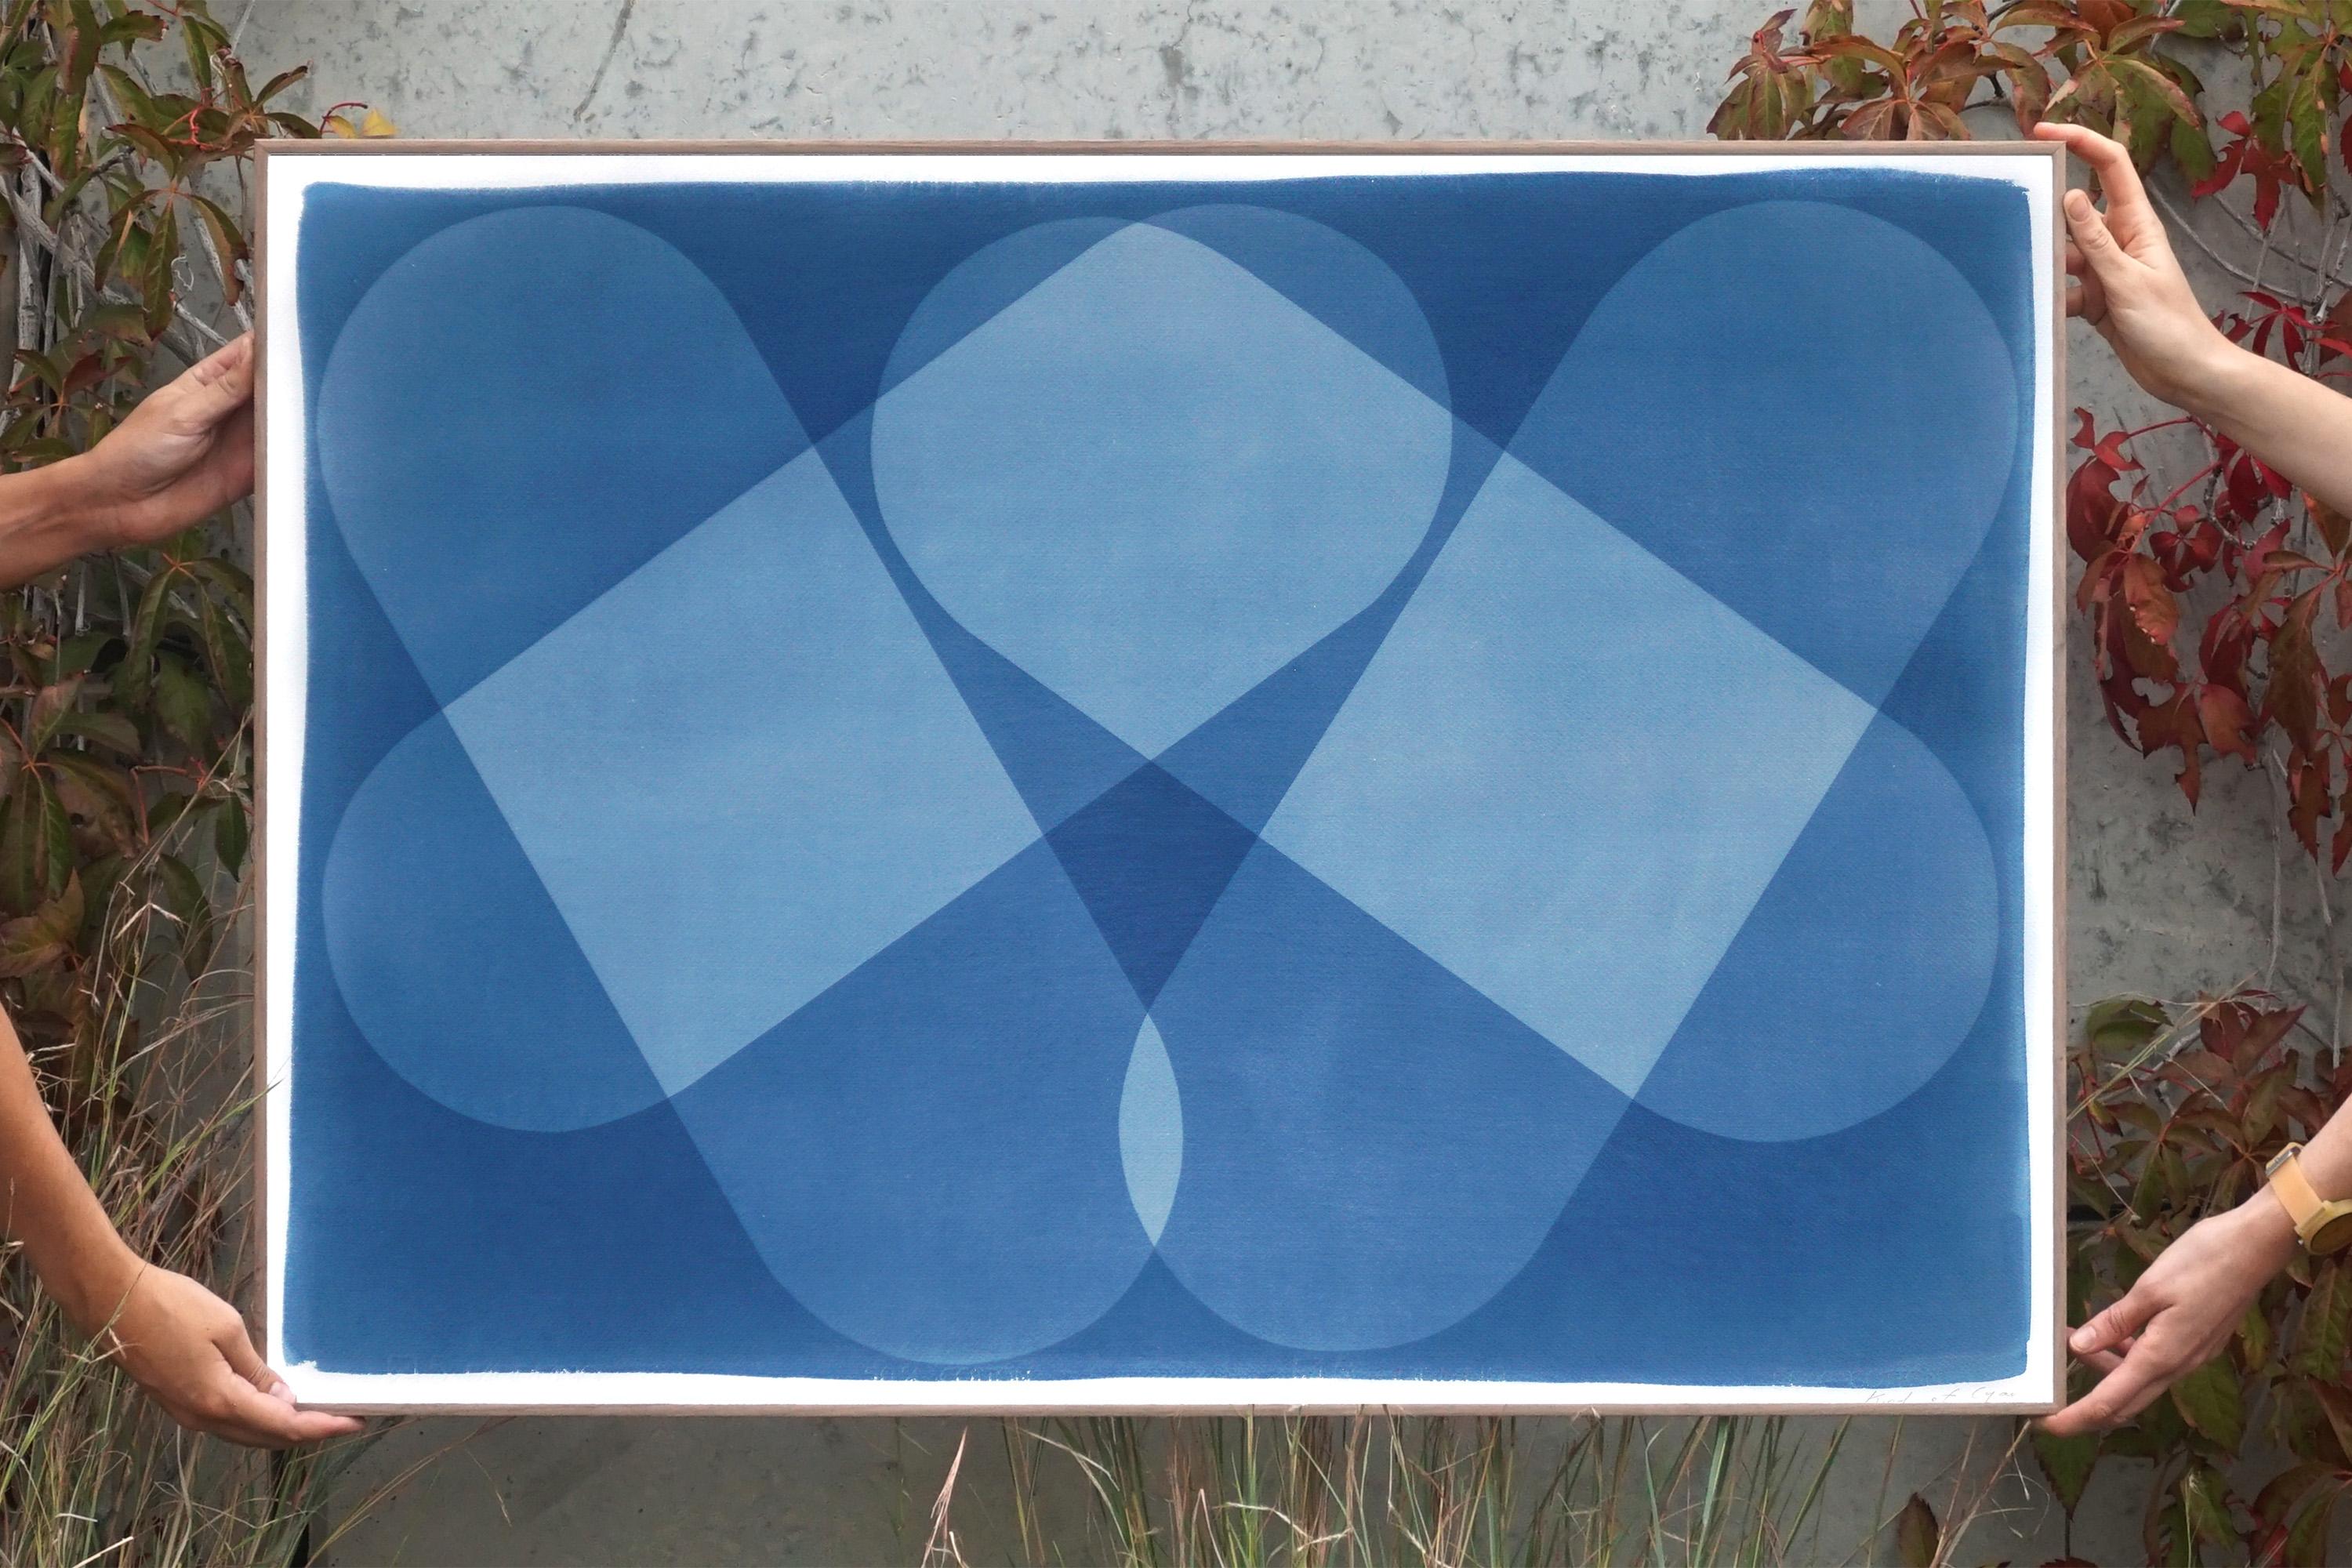 Iconique symétrique, blocs aux tons bleus, bâtiments abstraits, cyanotype unique, papier - Photograph de Kind of Cyan